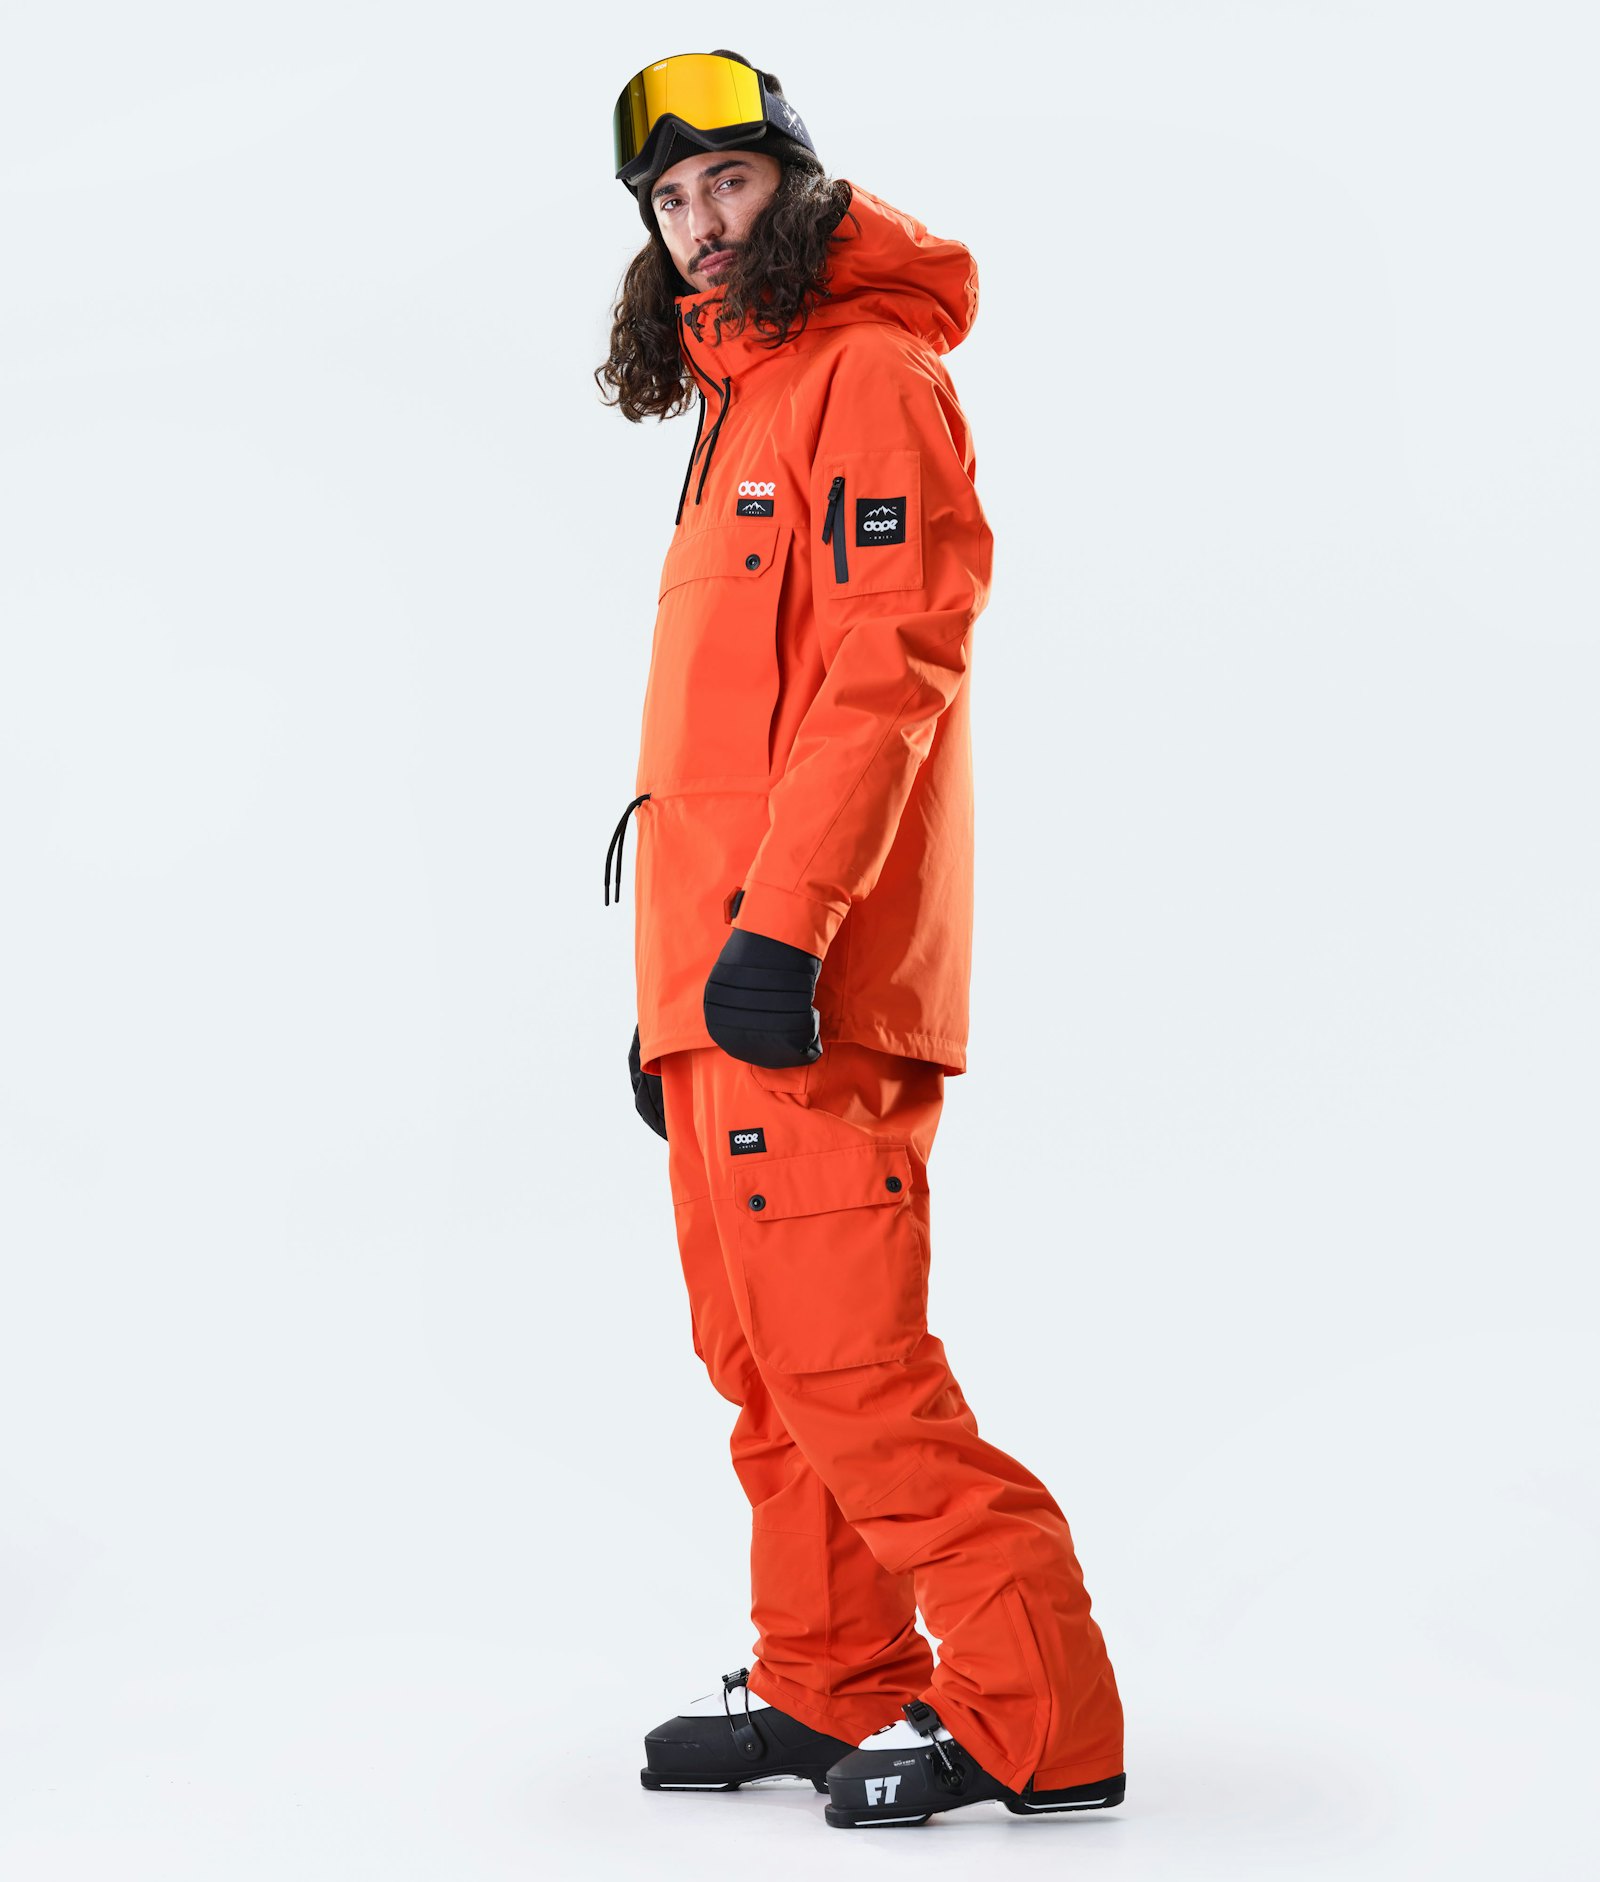 Annok 2020 Veste de Ski Homme Orange